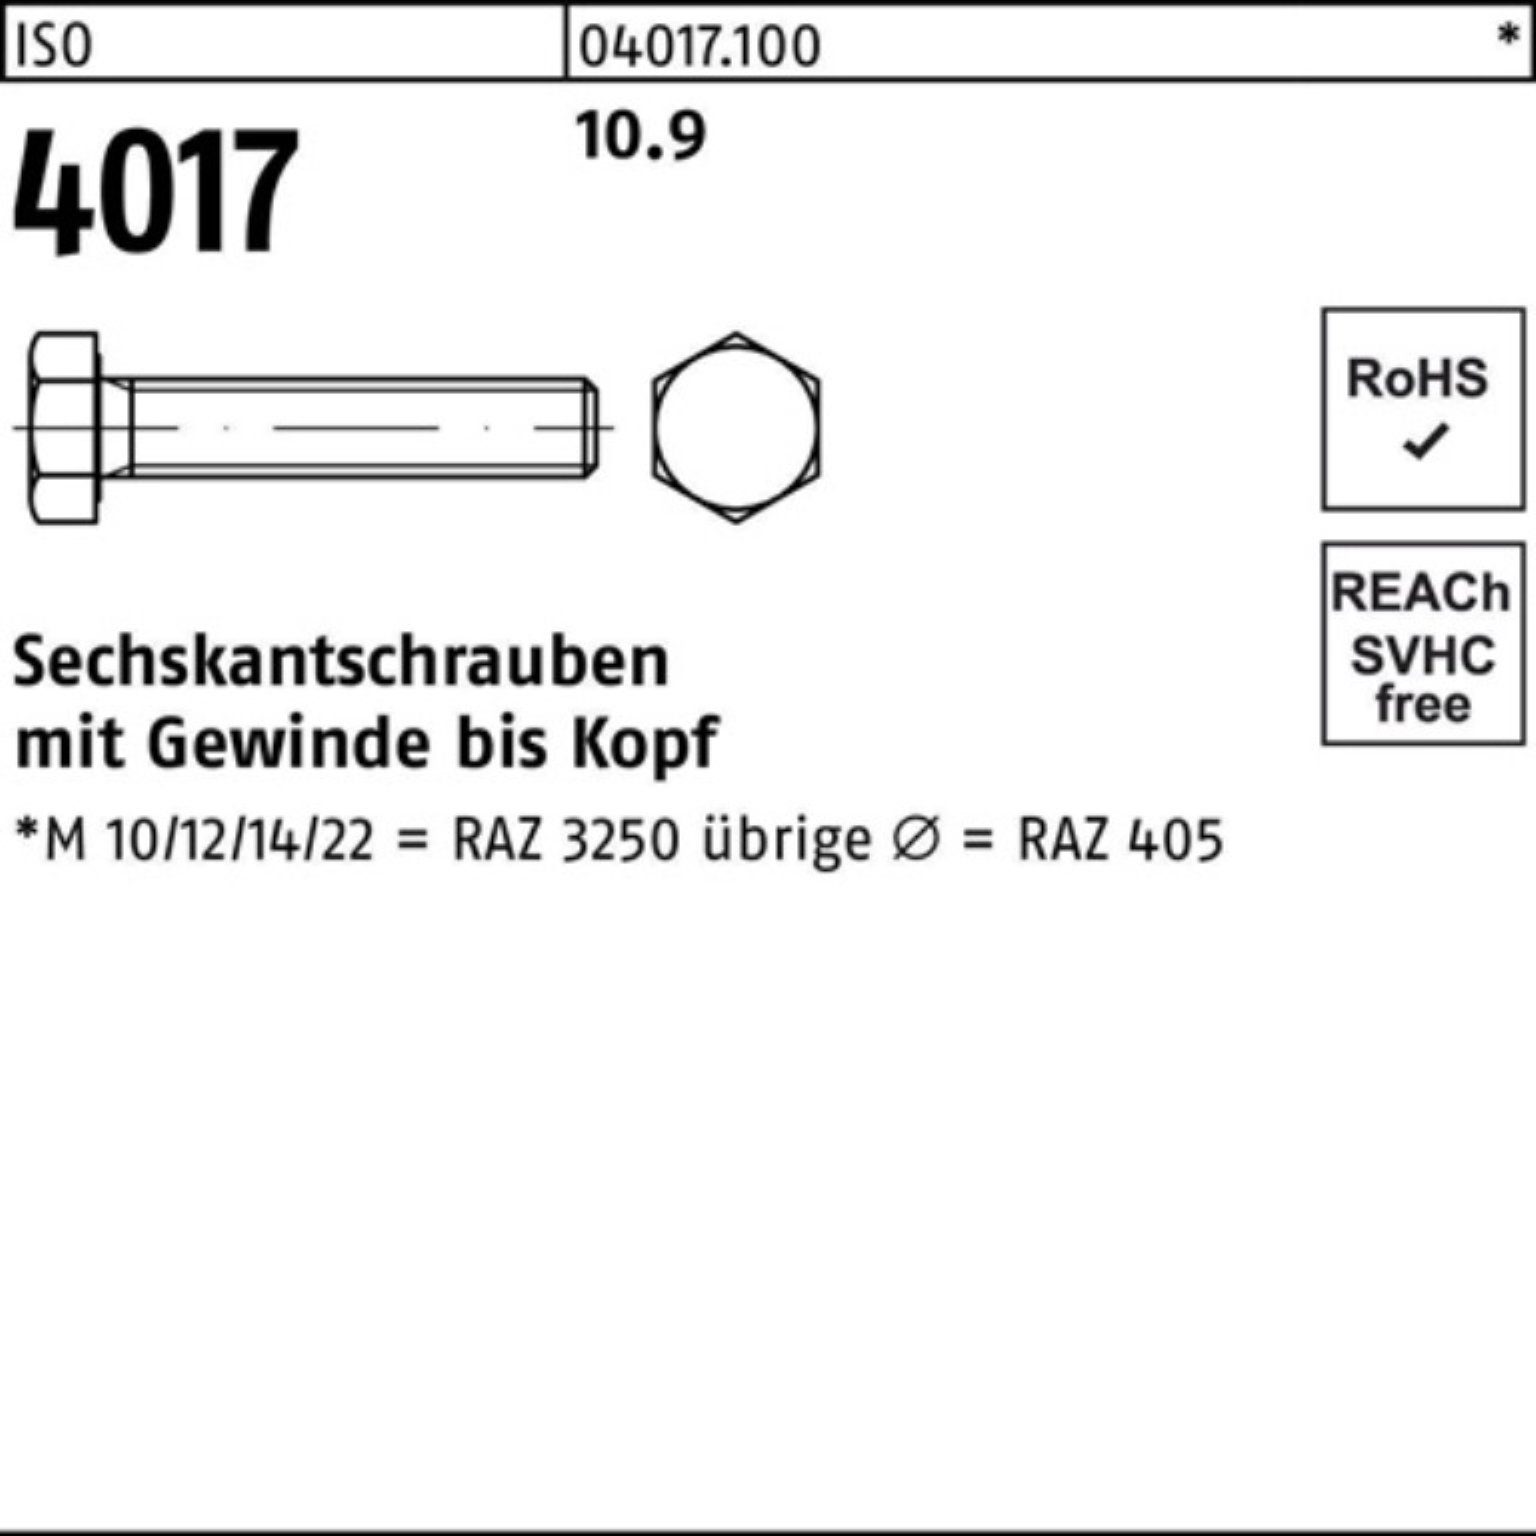 10.9 VG 4017 100 Sechskantschraube 100 ISO Bufab M10x Stück ISO Sechskantschraube 100er Pack